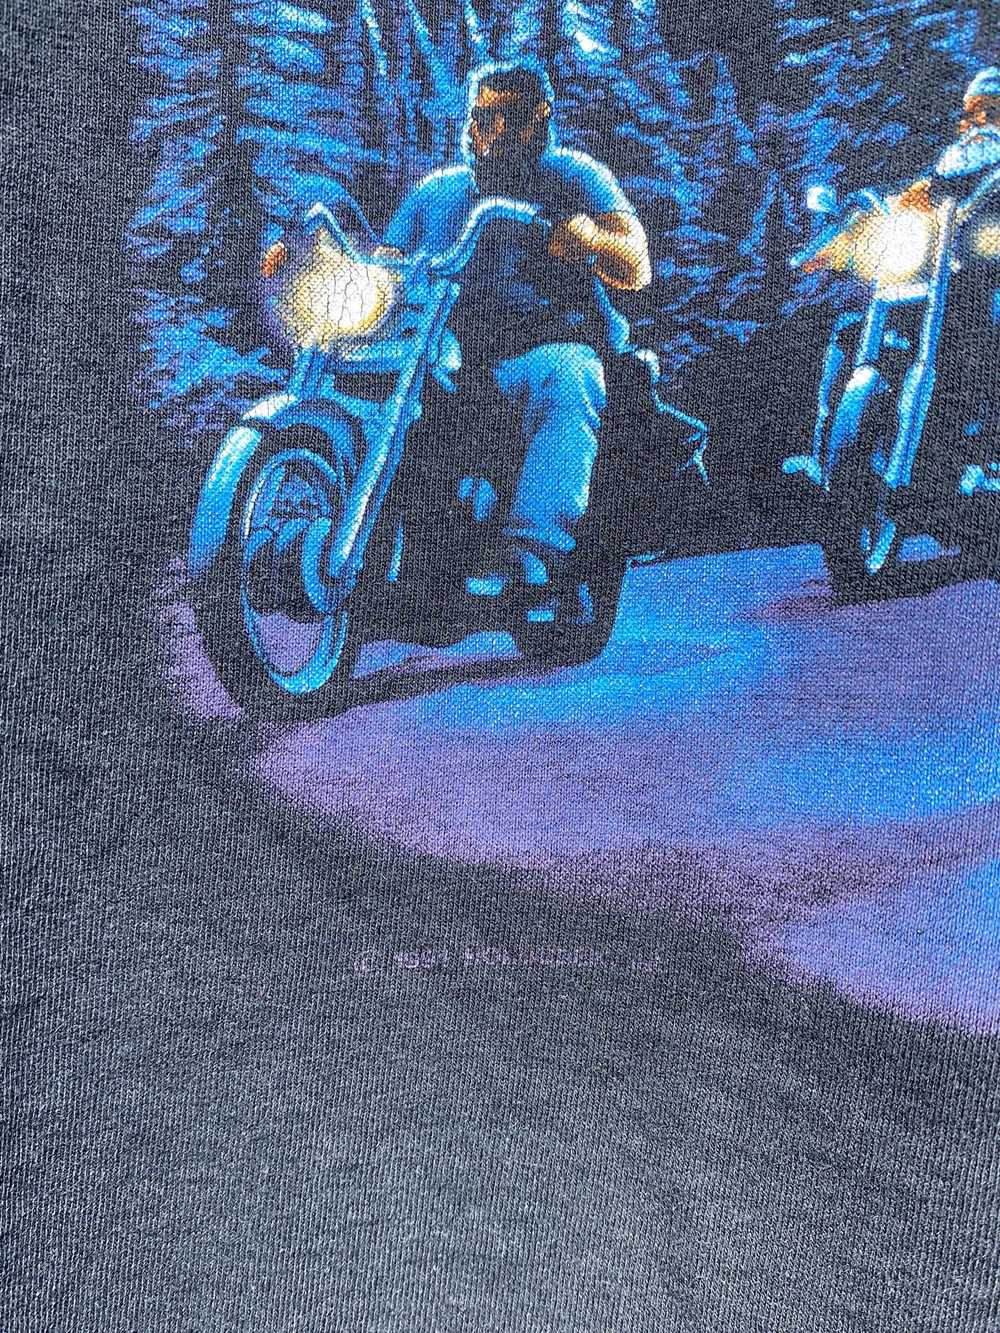 Vintage 1991 Harley Davidson t-shirt - image 5